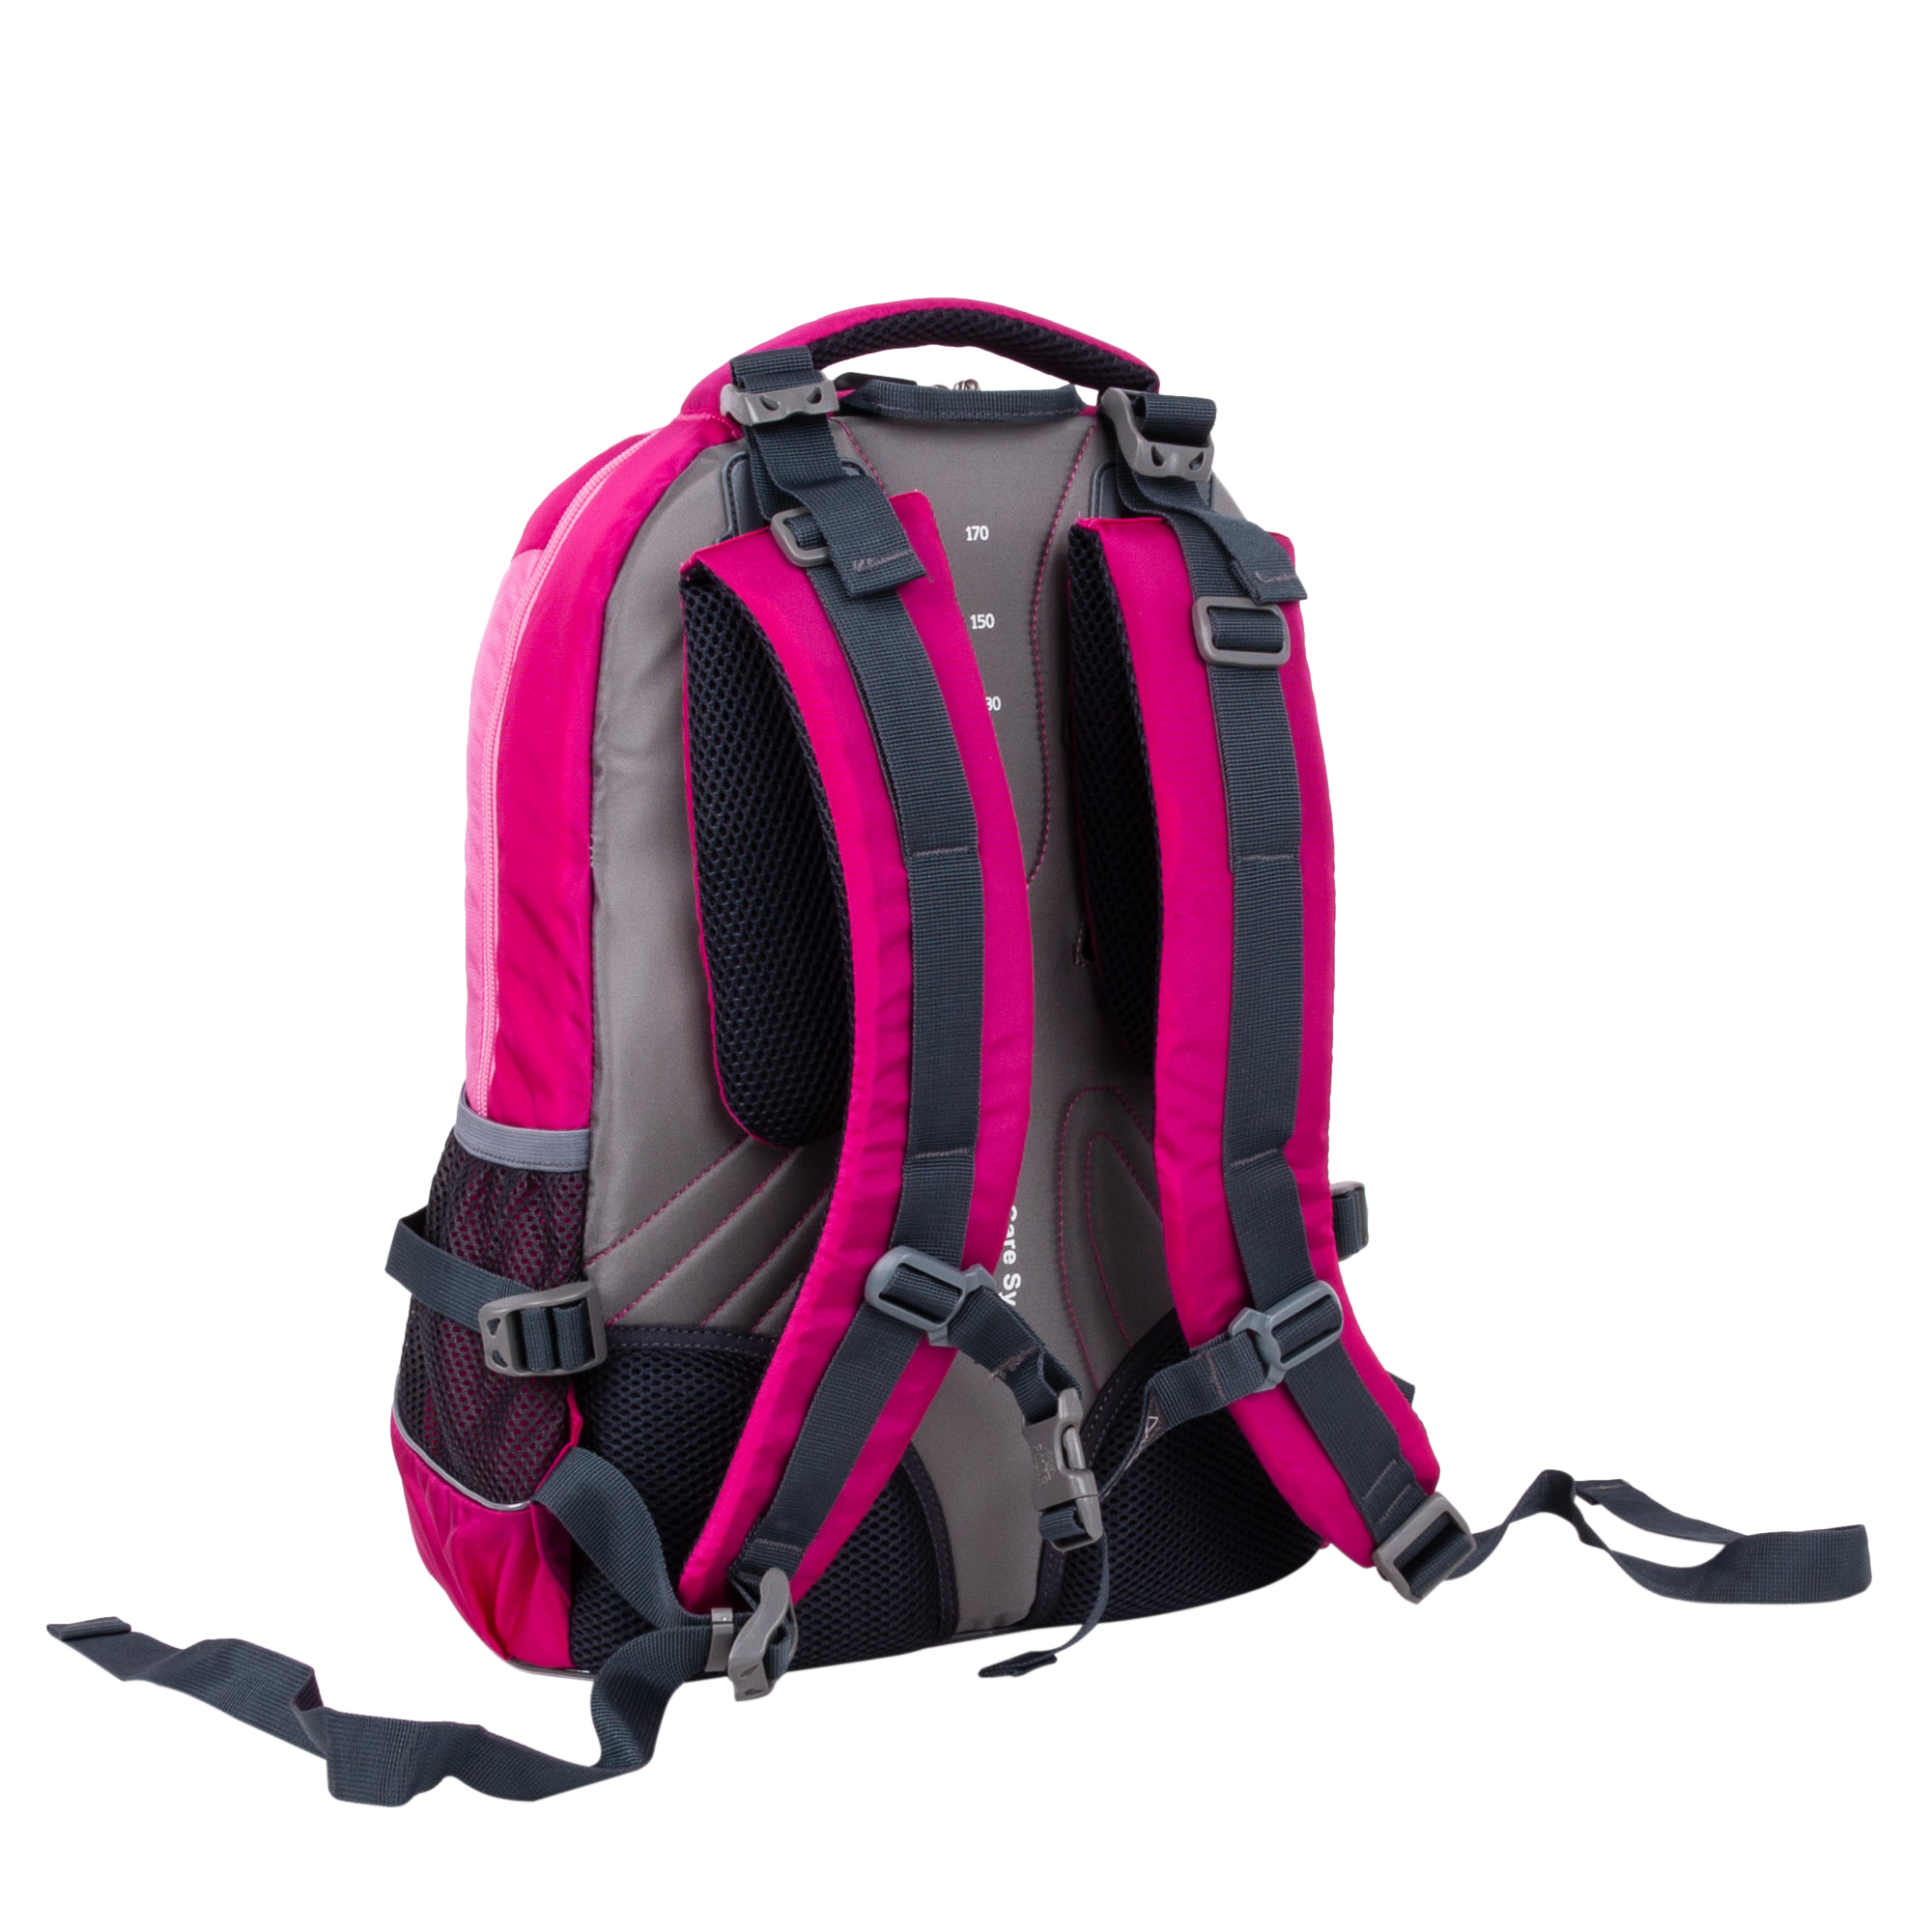 Рюкзак Polar П220 26 л темно-розовый